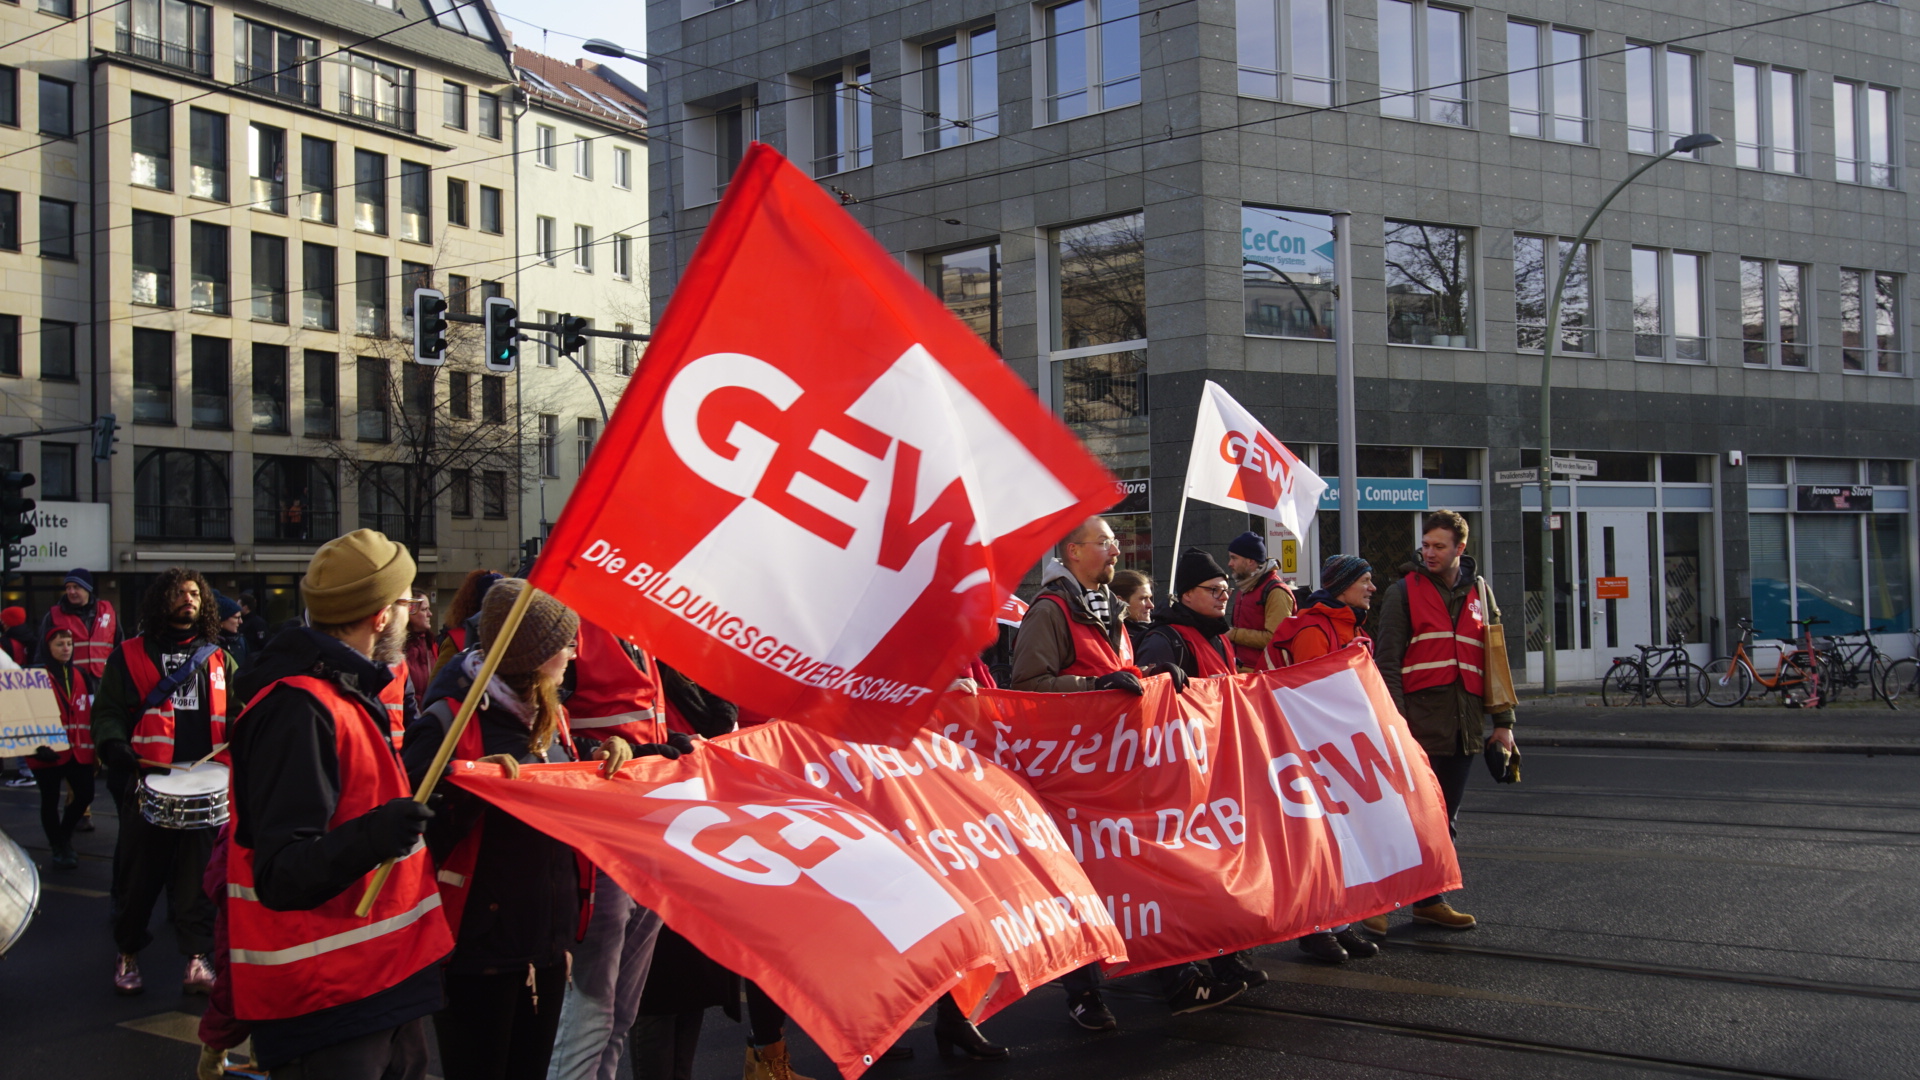 14.12.: VKG Berlin diskutiert über Lehrer:innenstreiks